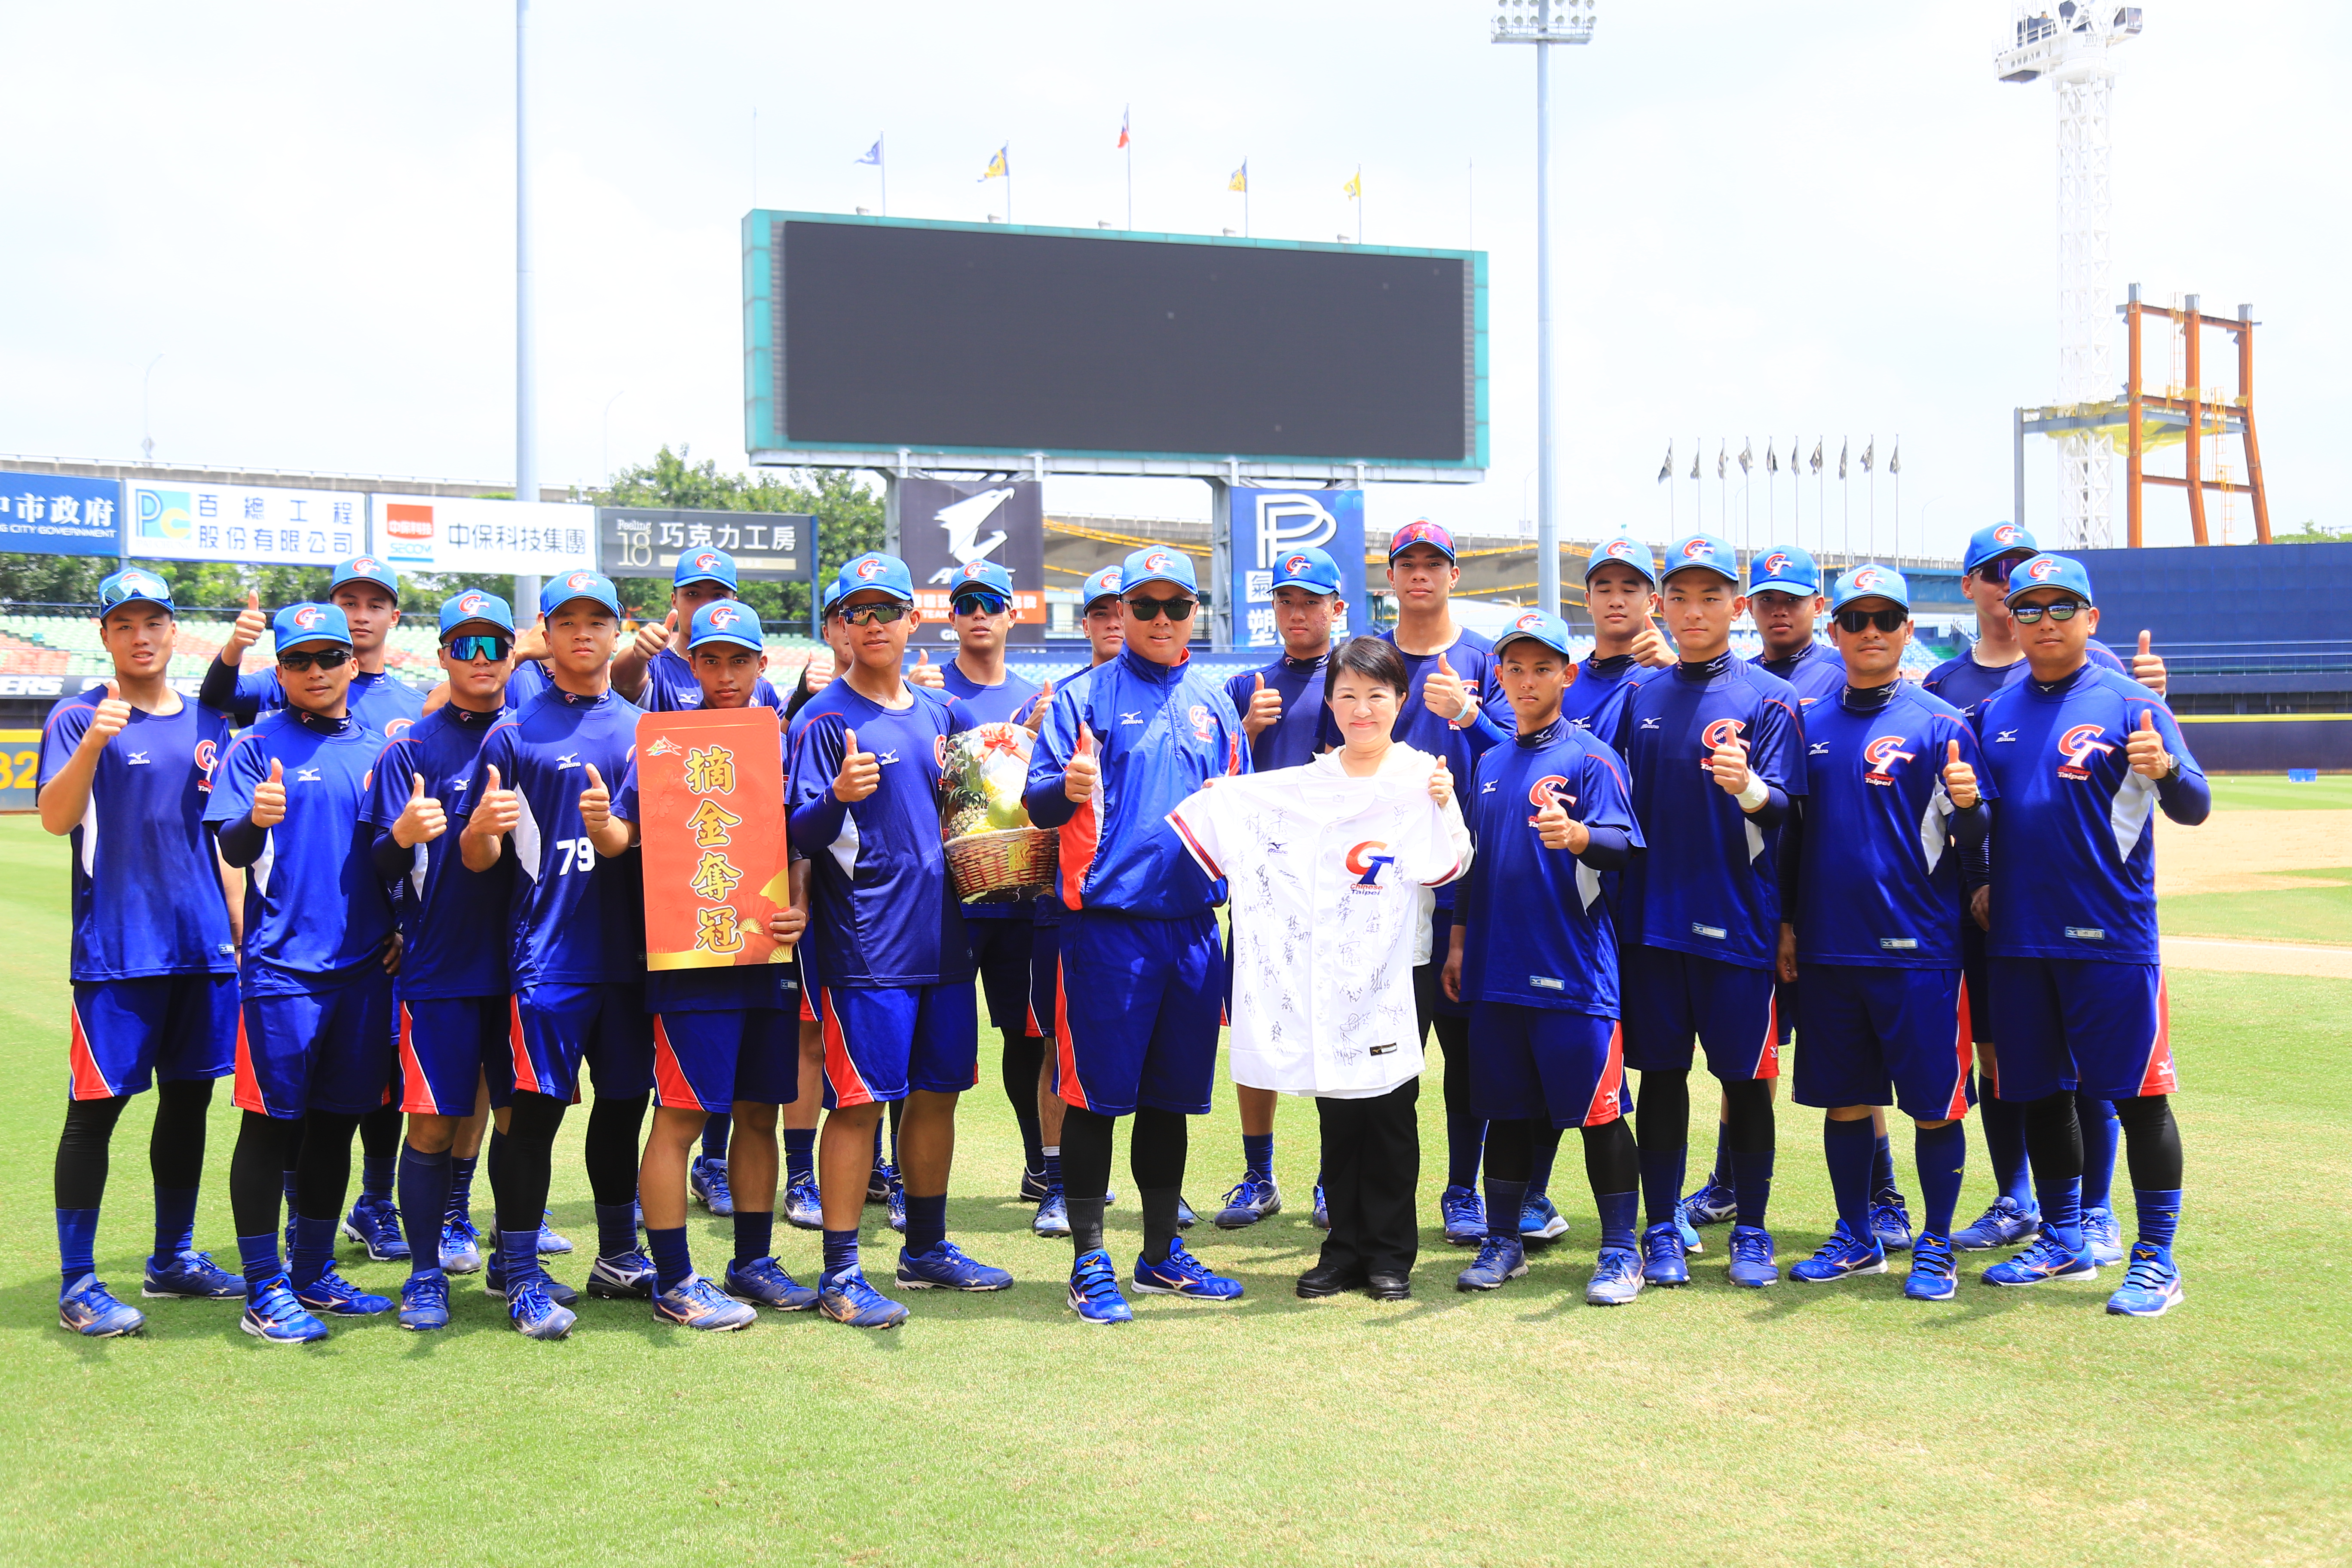 U18青棒錦標賽台中登場  市長祝台灣英雄勇奪金盃